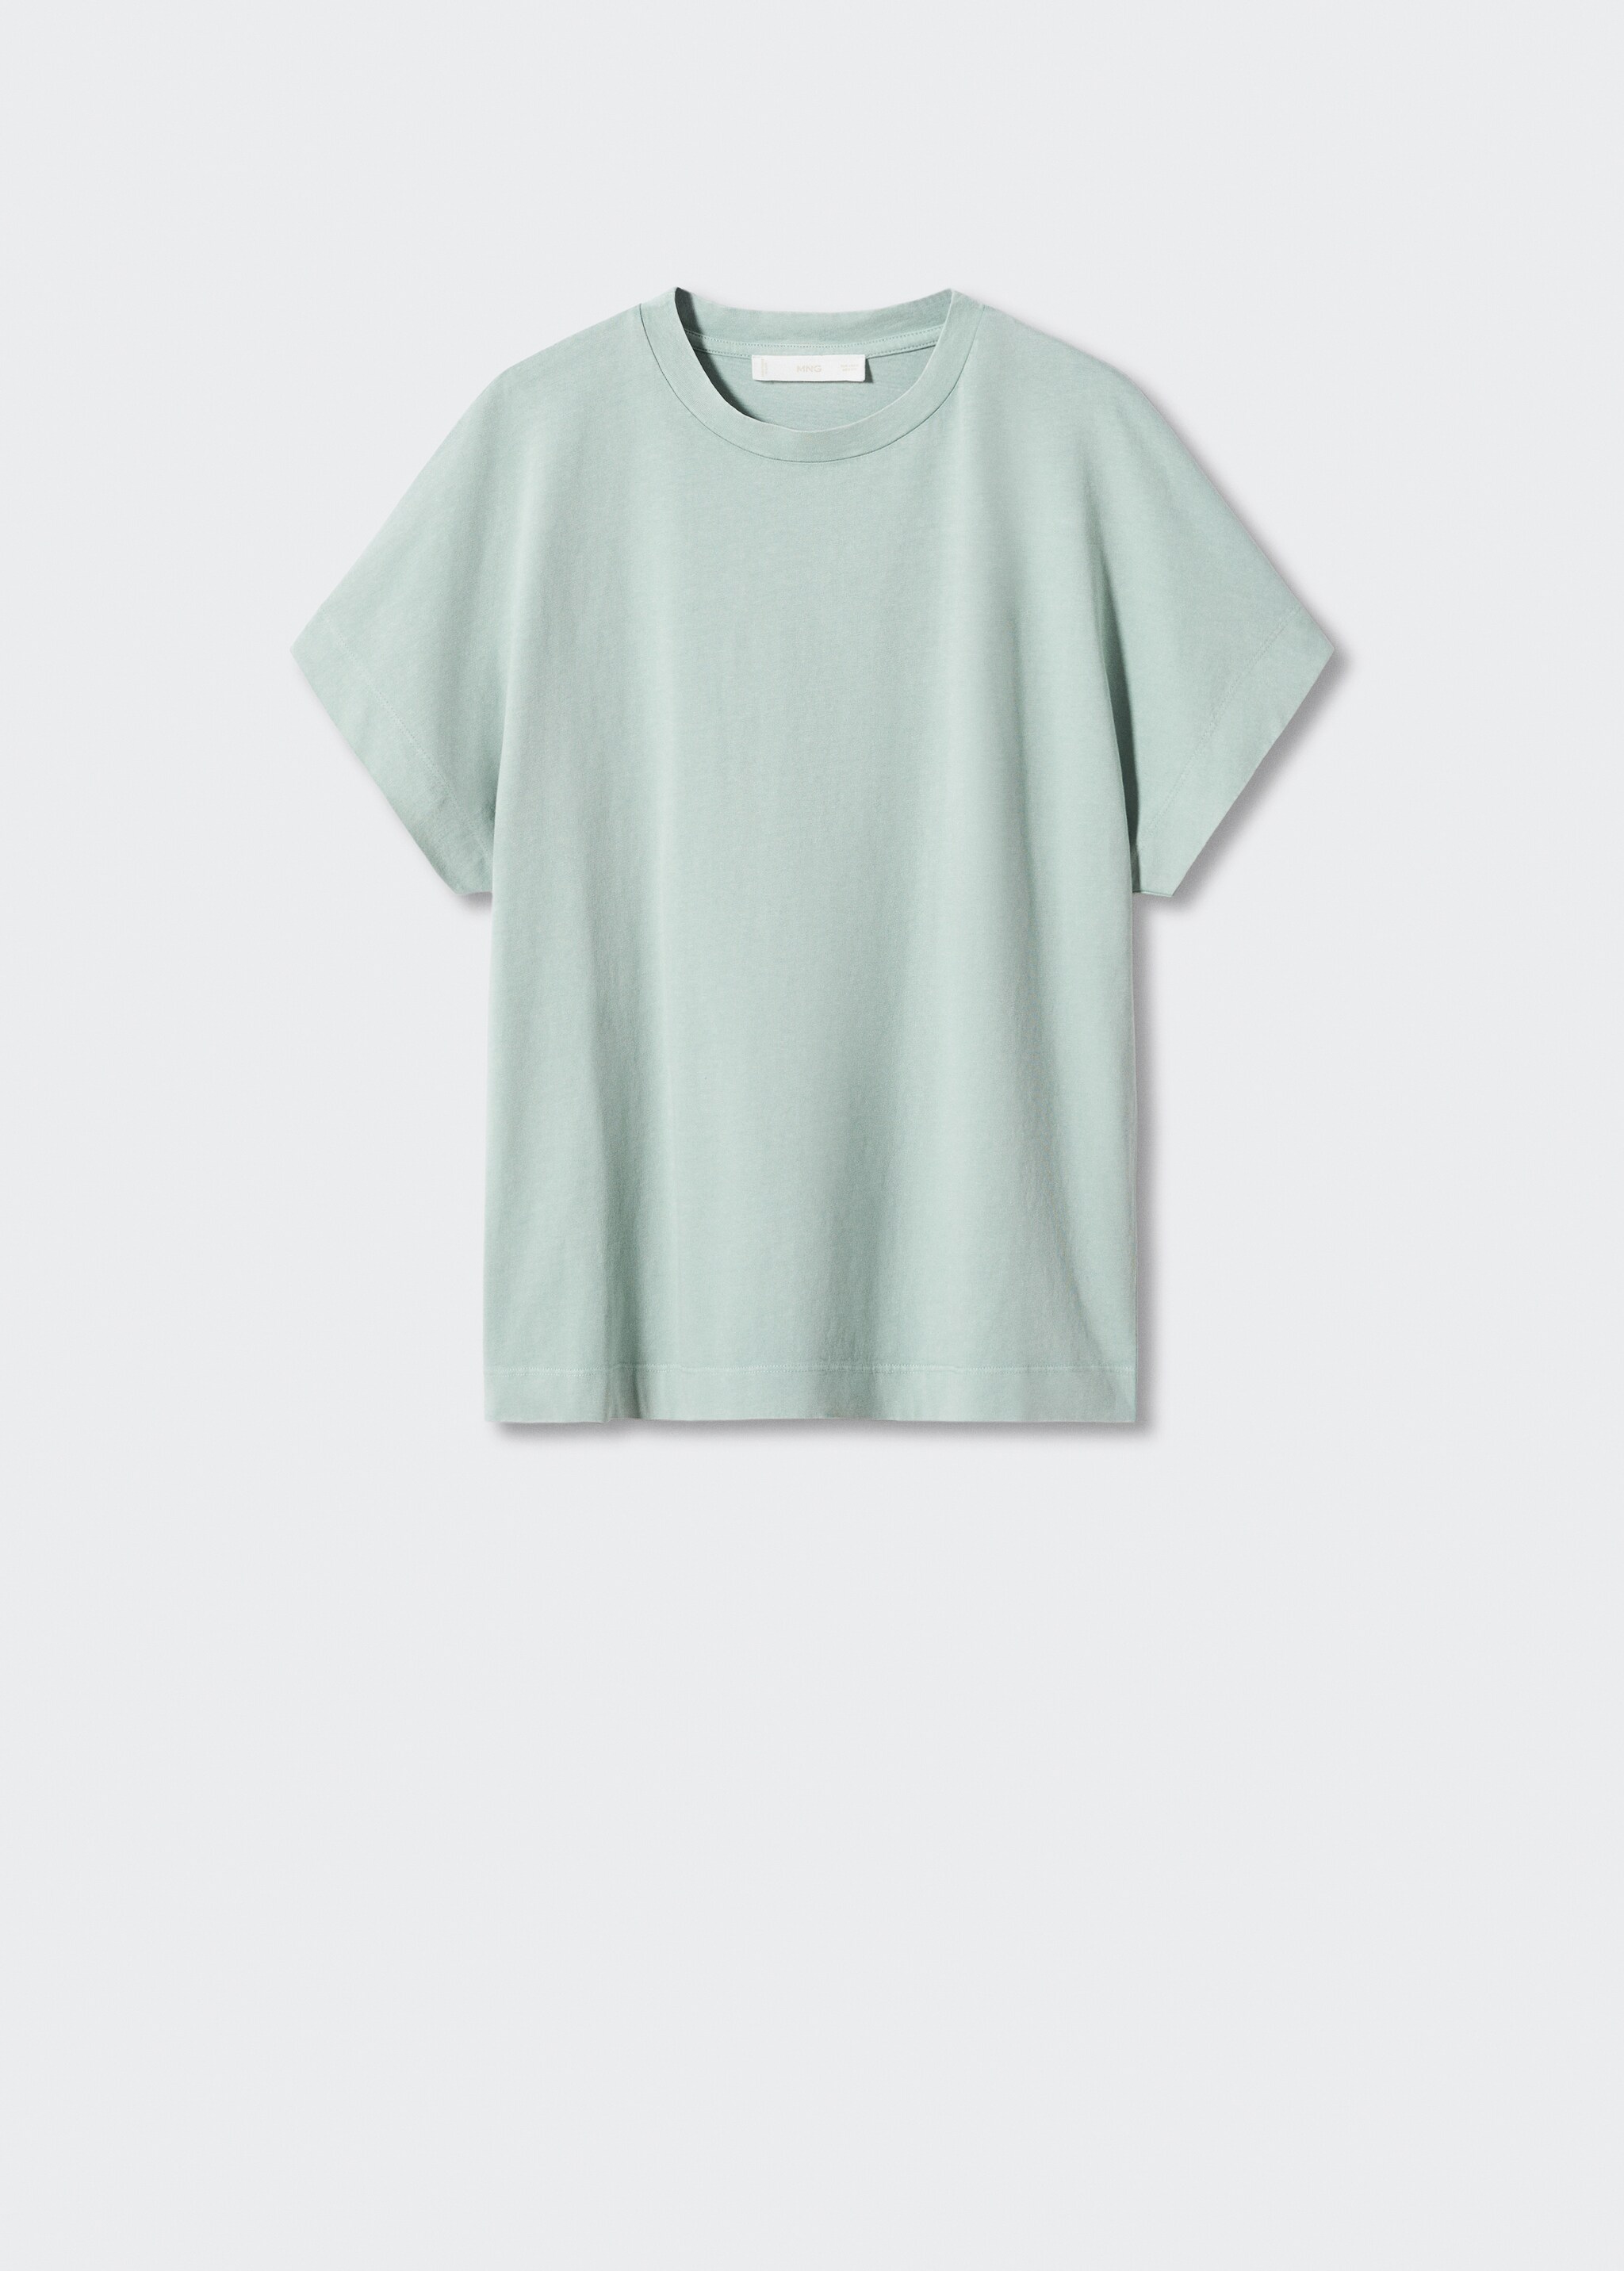 Camiseta algodón efecto lavado - Artículo sin modelo